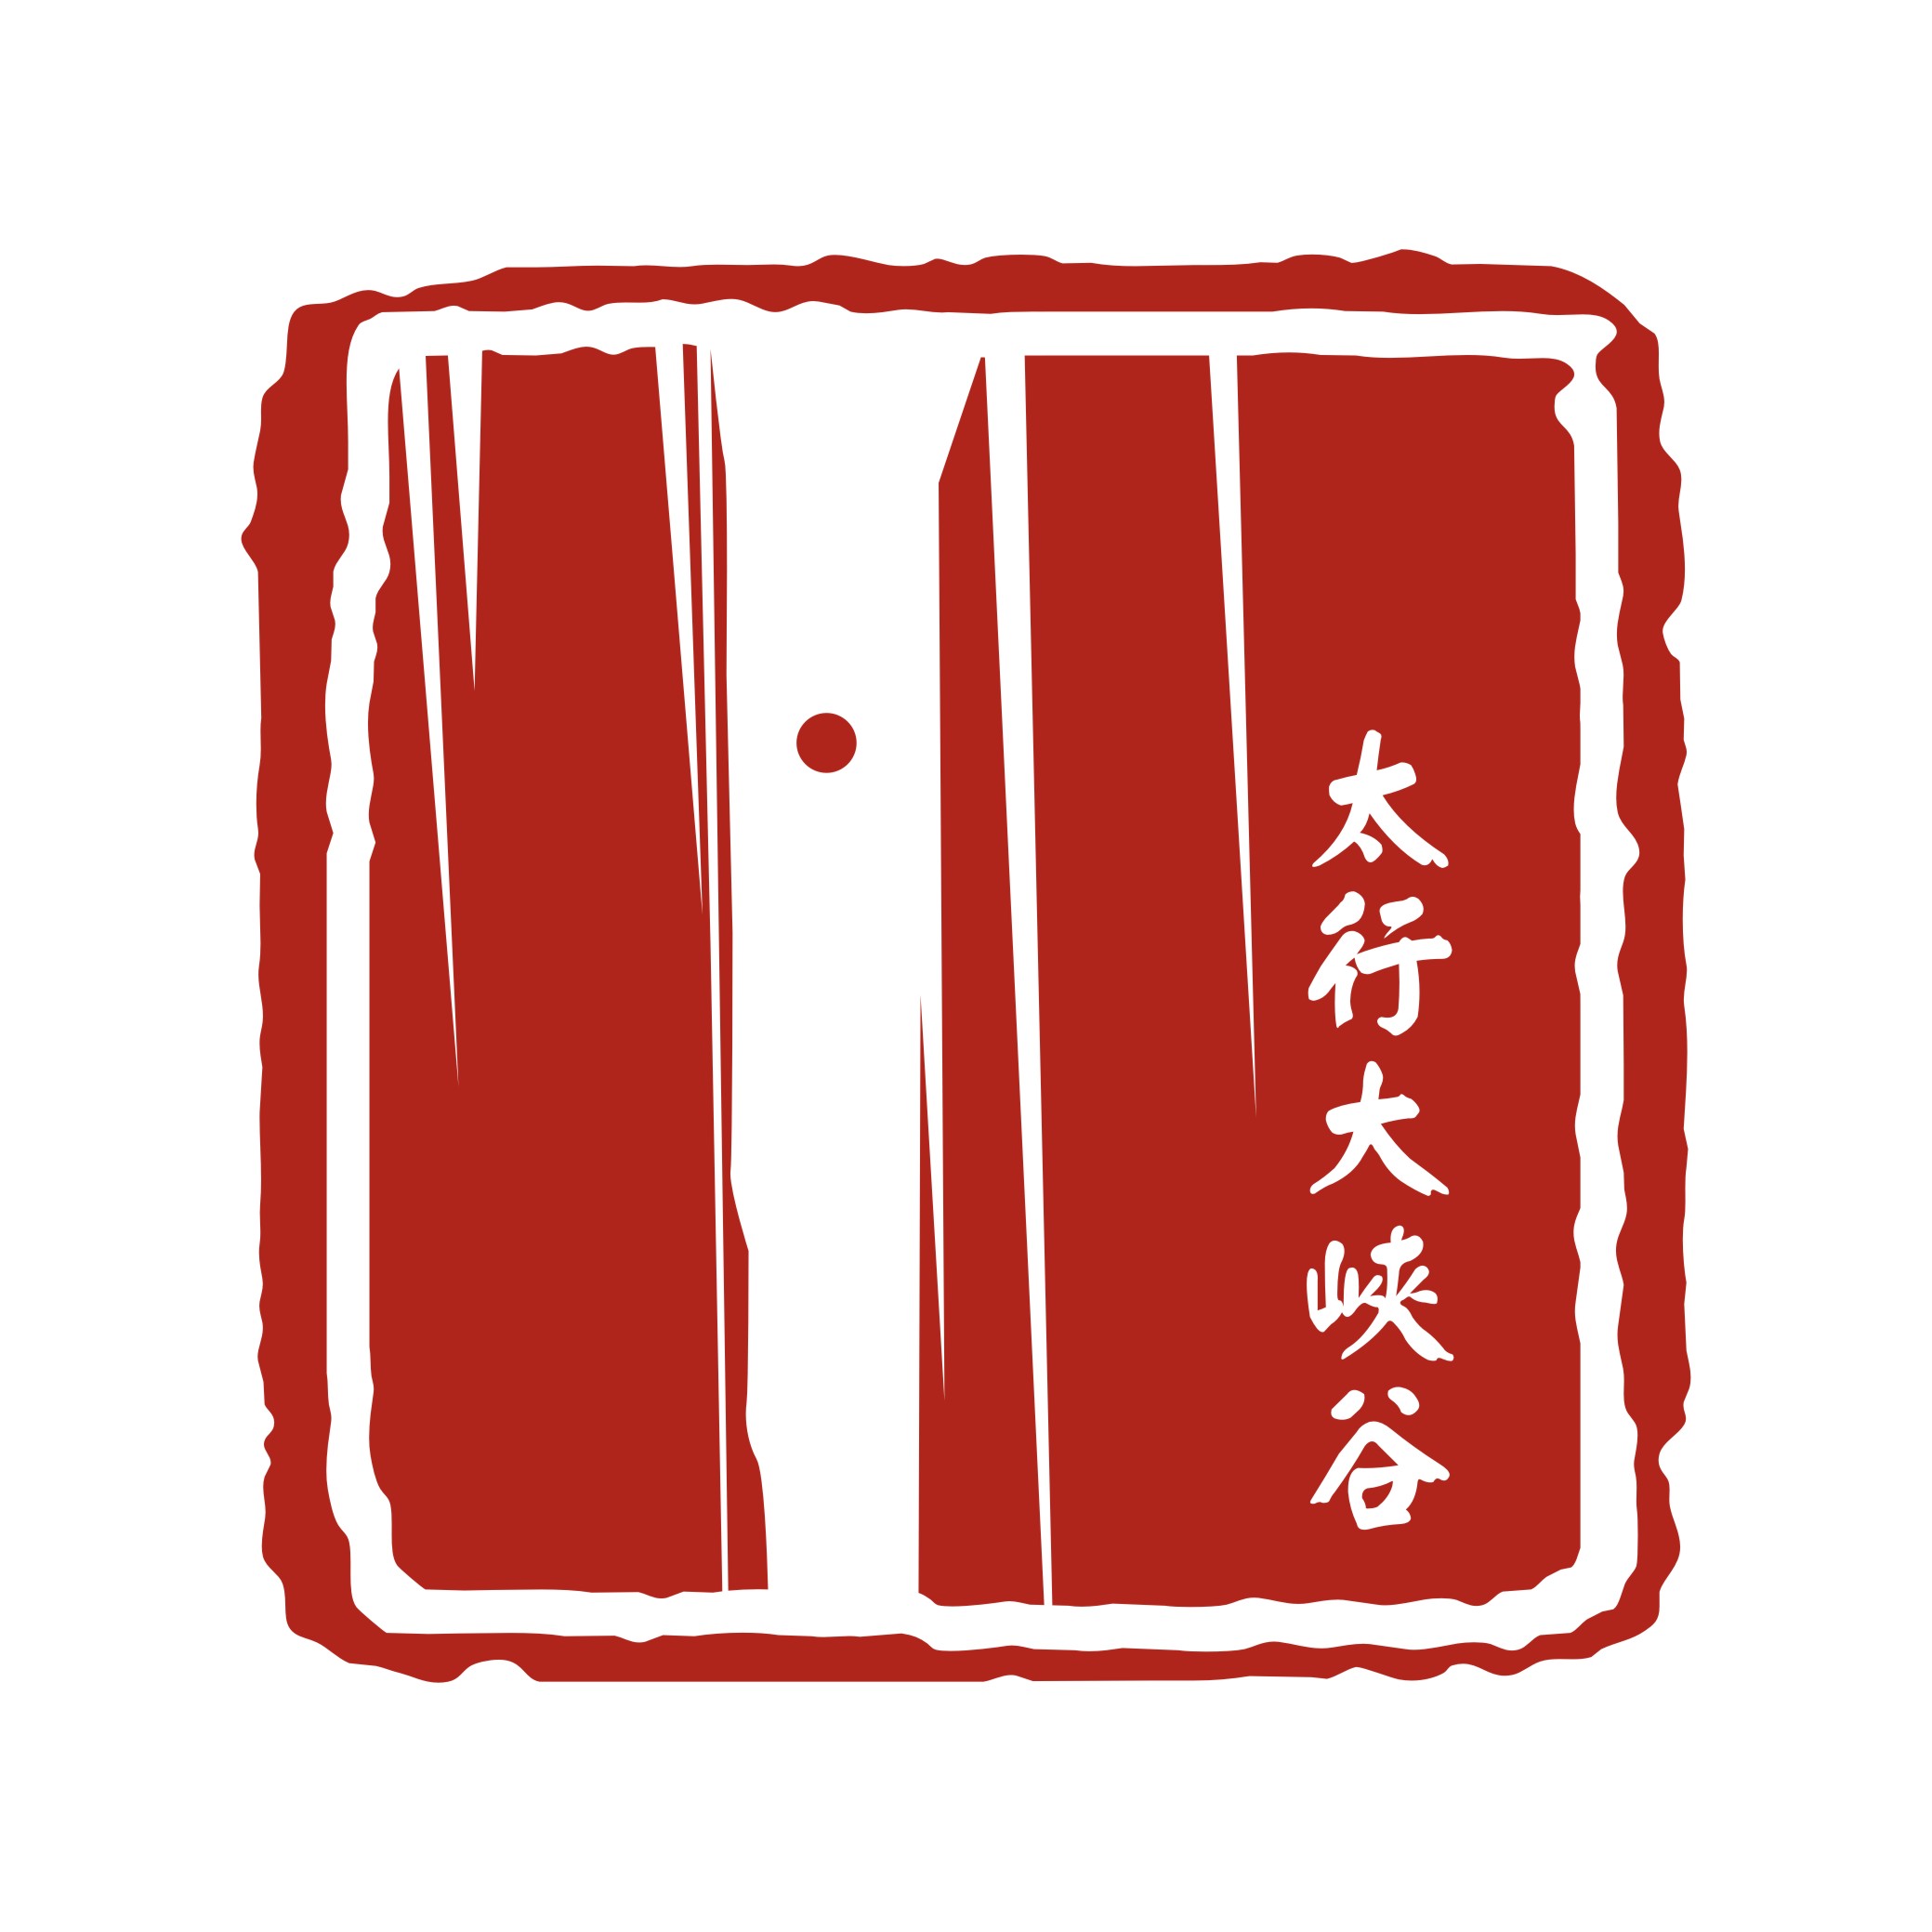 林州logo图片